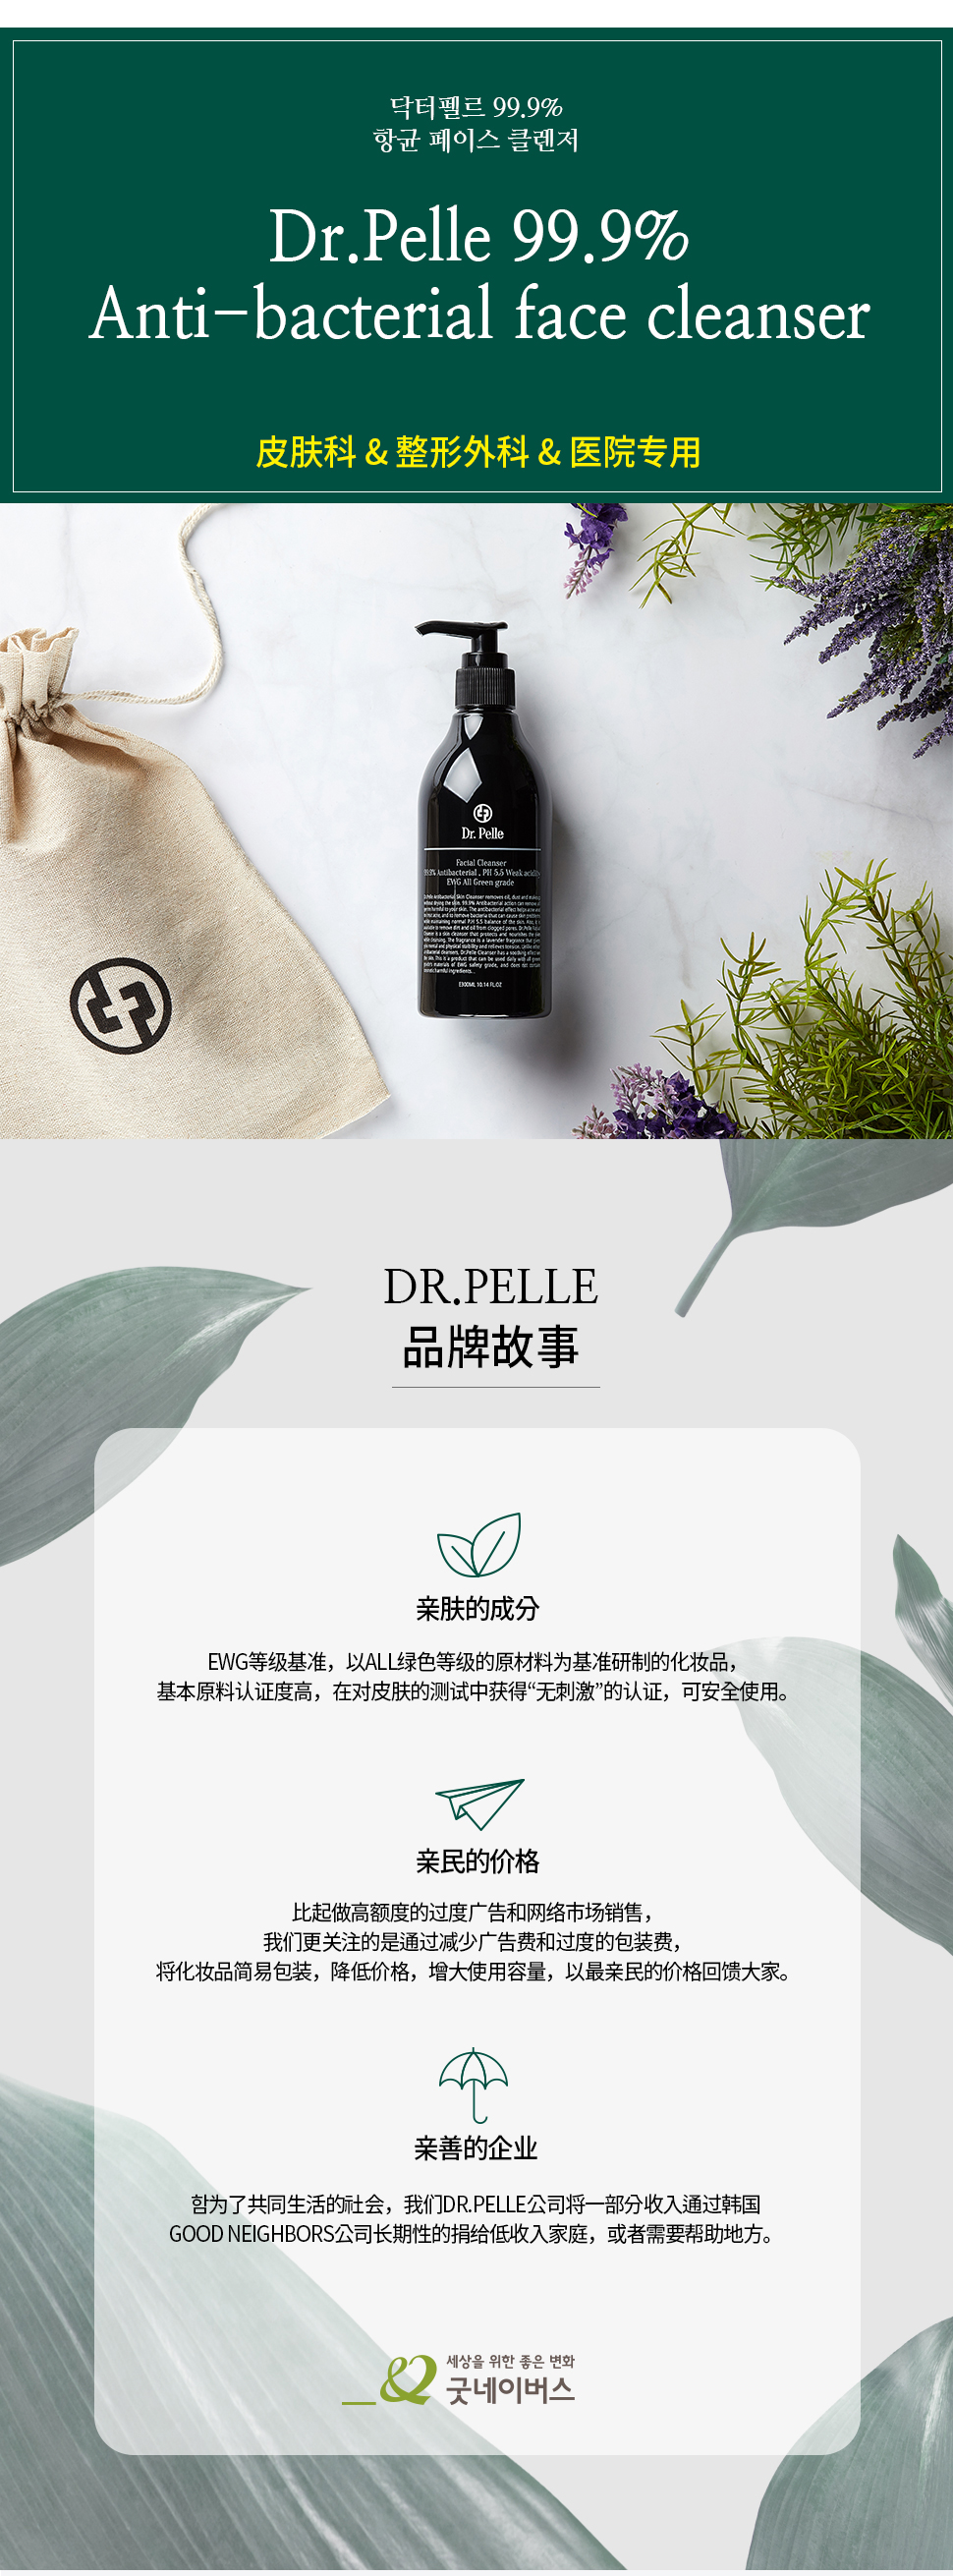 Dr.Pelle99.9%抗菌洁面乳 / 韩国正品 / 韩国直邮 description picture 1